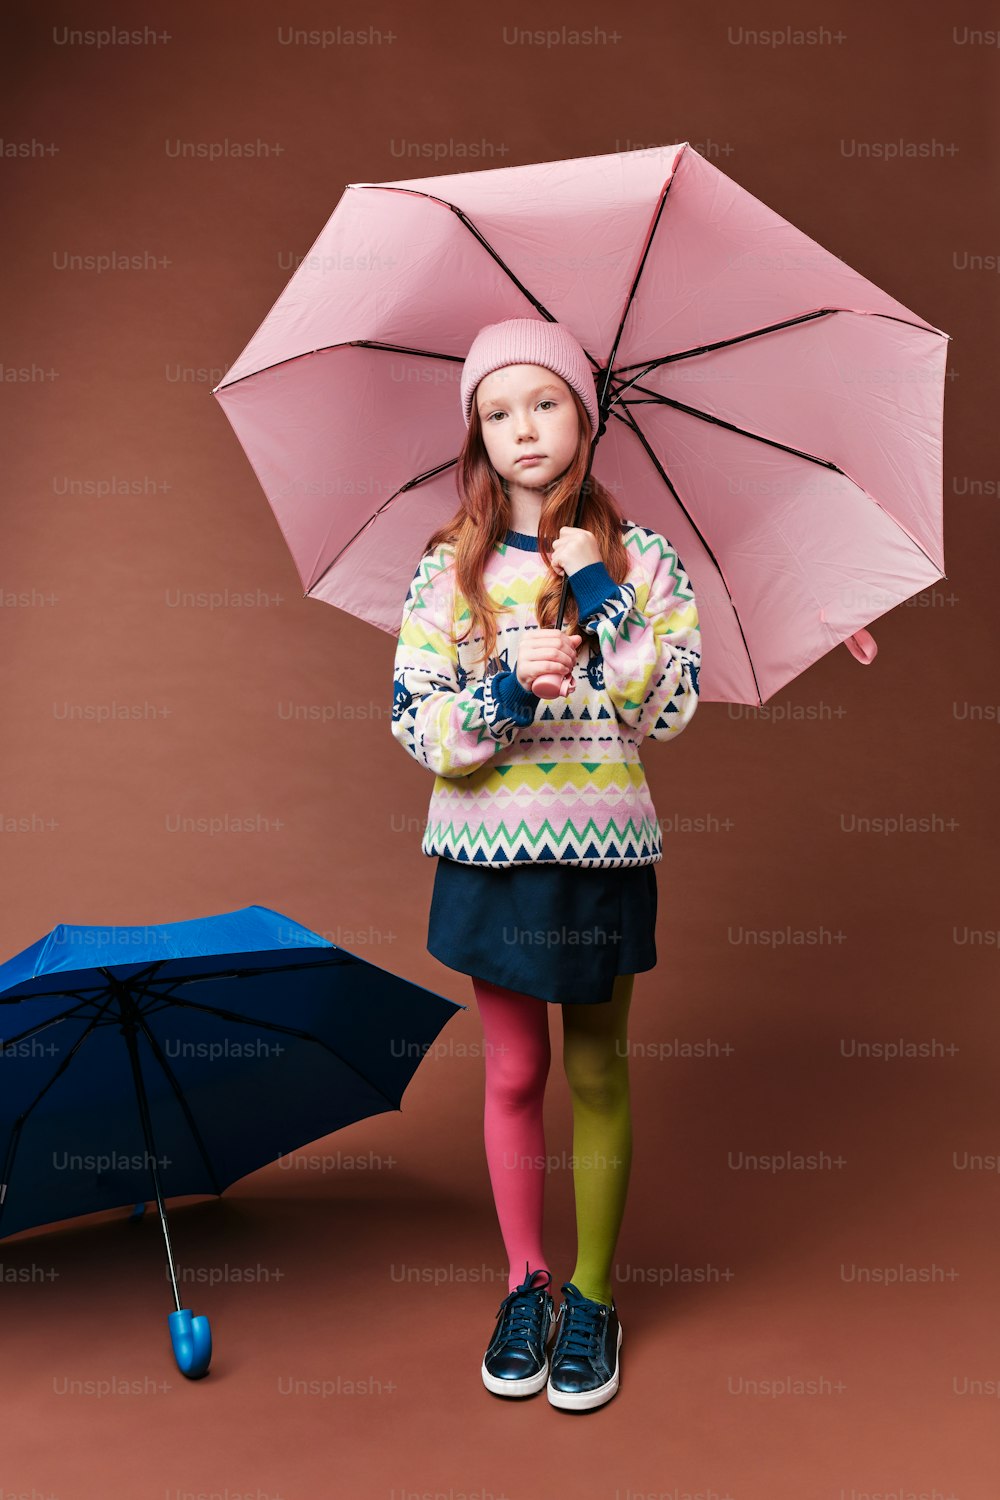 a little girl holding a pink umbrella next to a blue umbrella